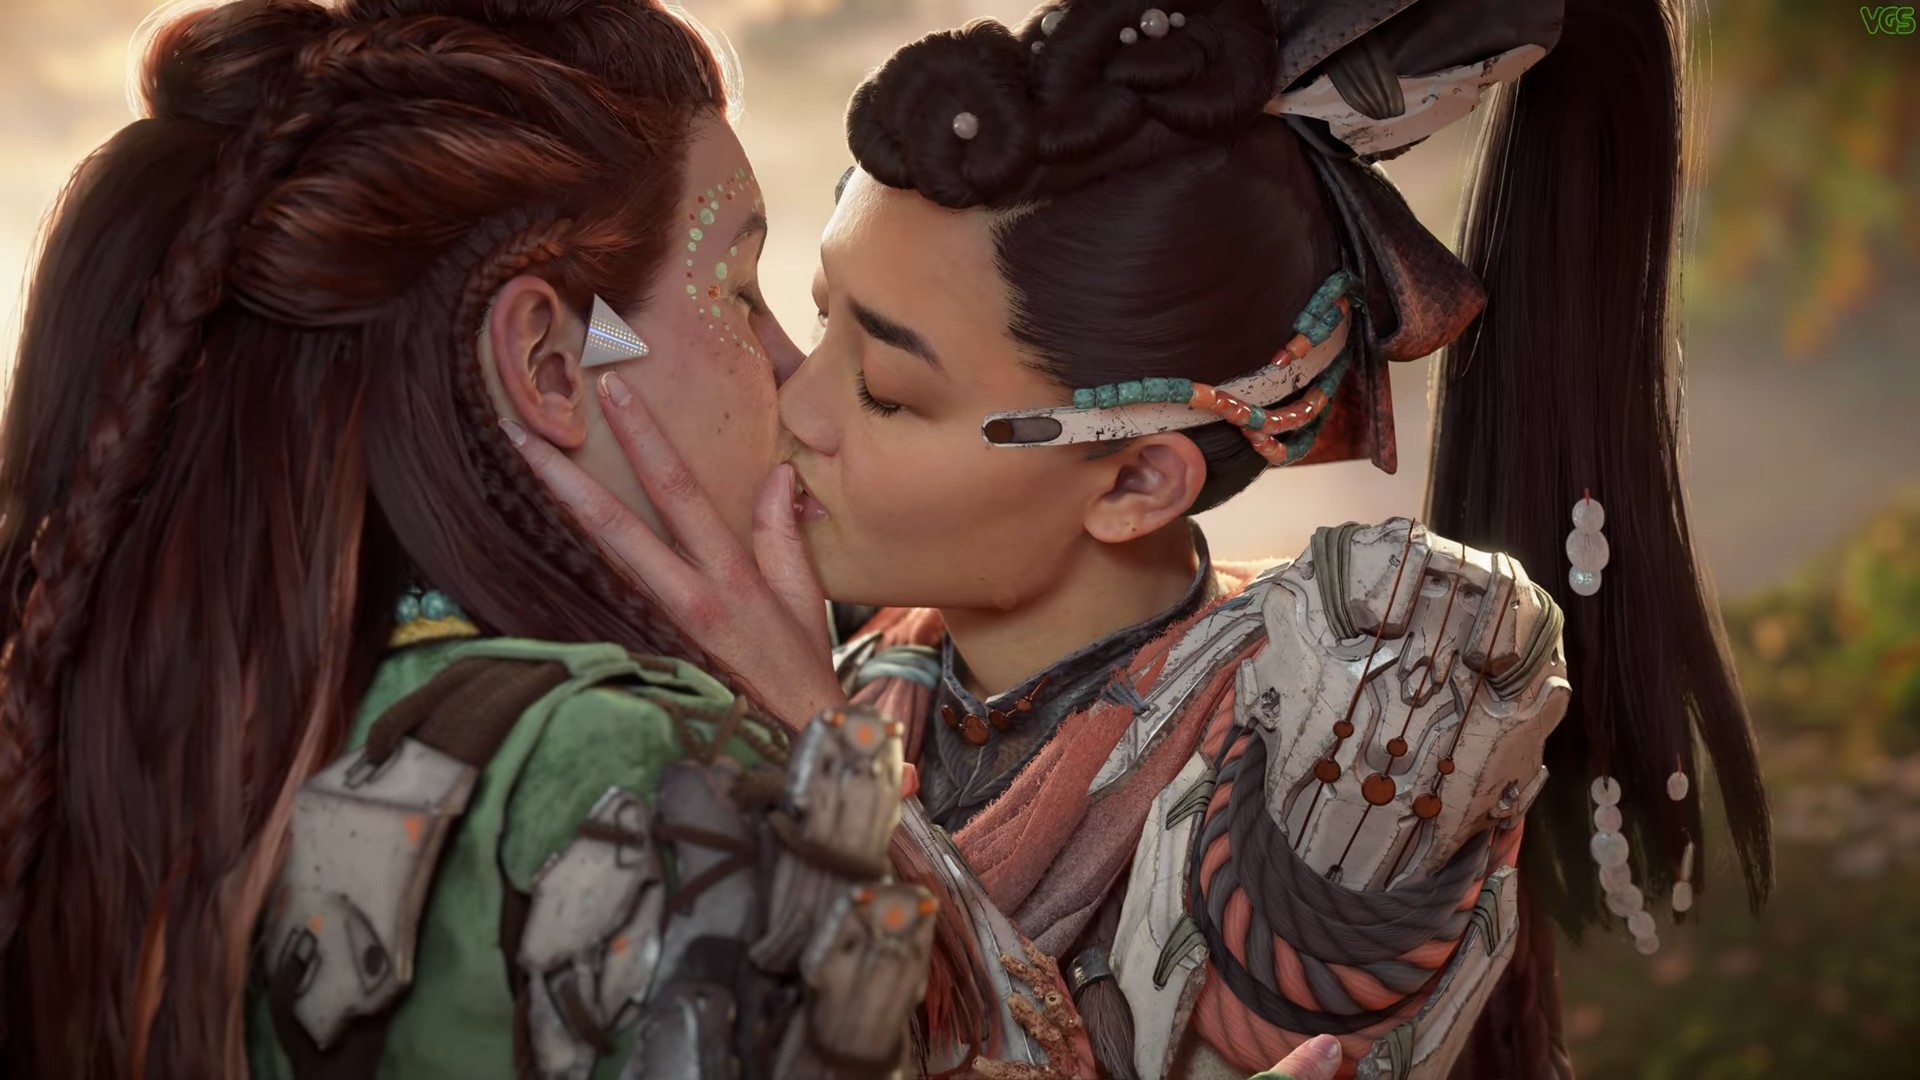 El contenido descargable Horizon Burning Shores está recibiendo una abrumadora cantidad de críticas negativas sobre Lesbian Kiss